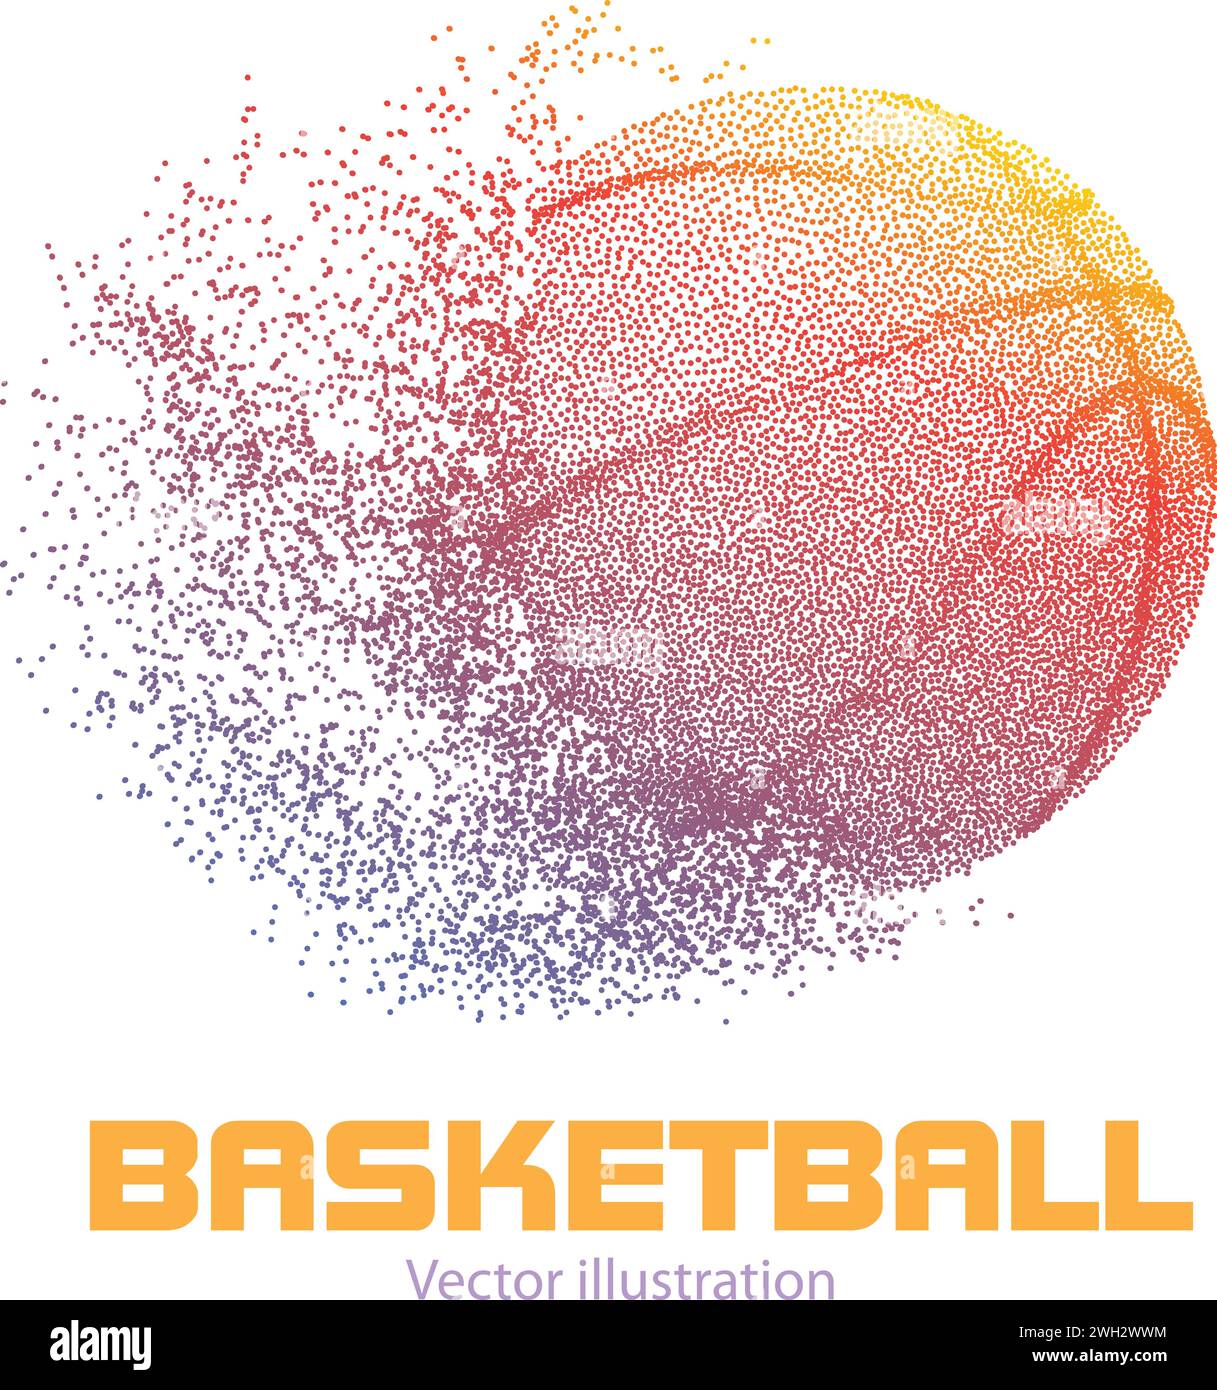 Basketballball .Sportball .Vektor-Illustration Stock Vektor